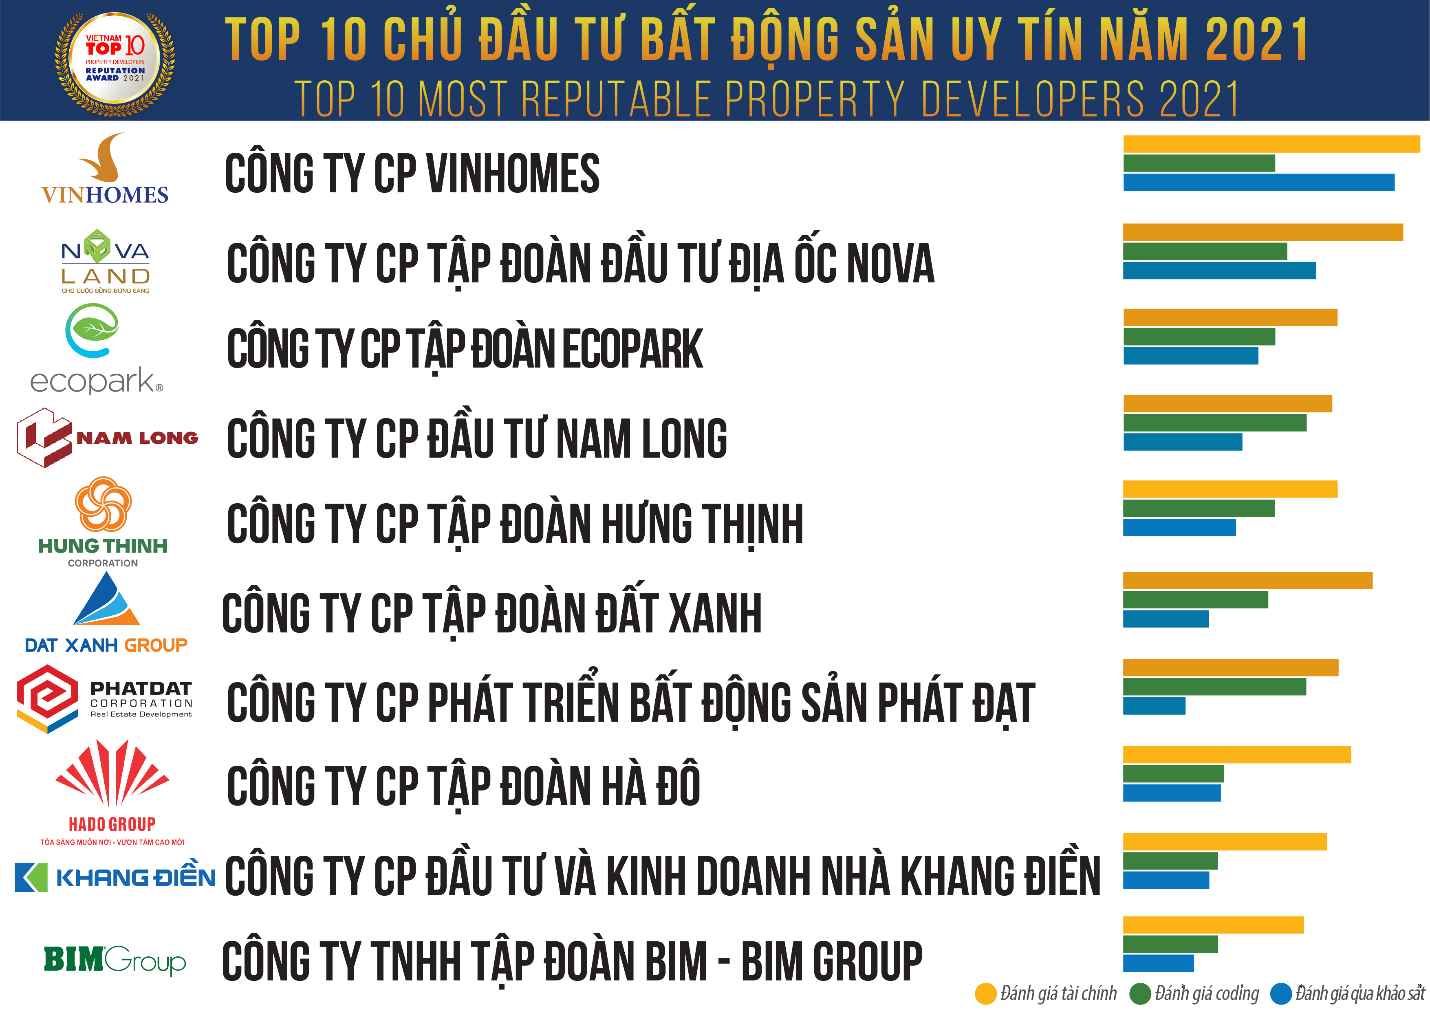 Nguồn: Vietnam Report, Top 10 Công ty bất động sản công nghiệp uy tín năm 2021, tháng 3/2021